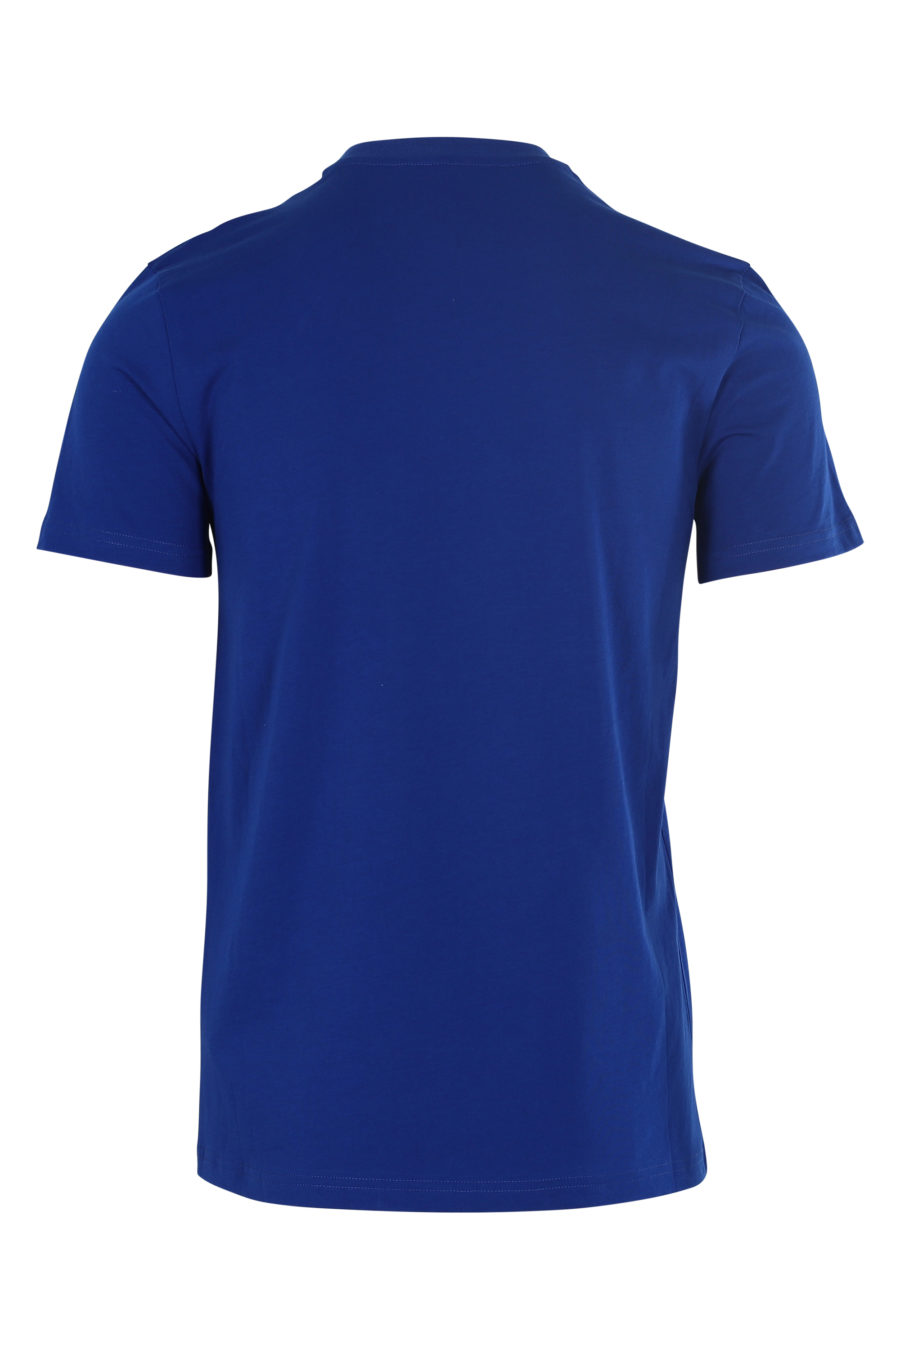 Camiseta azul oscuro con logo "Couture" - IMG 6098